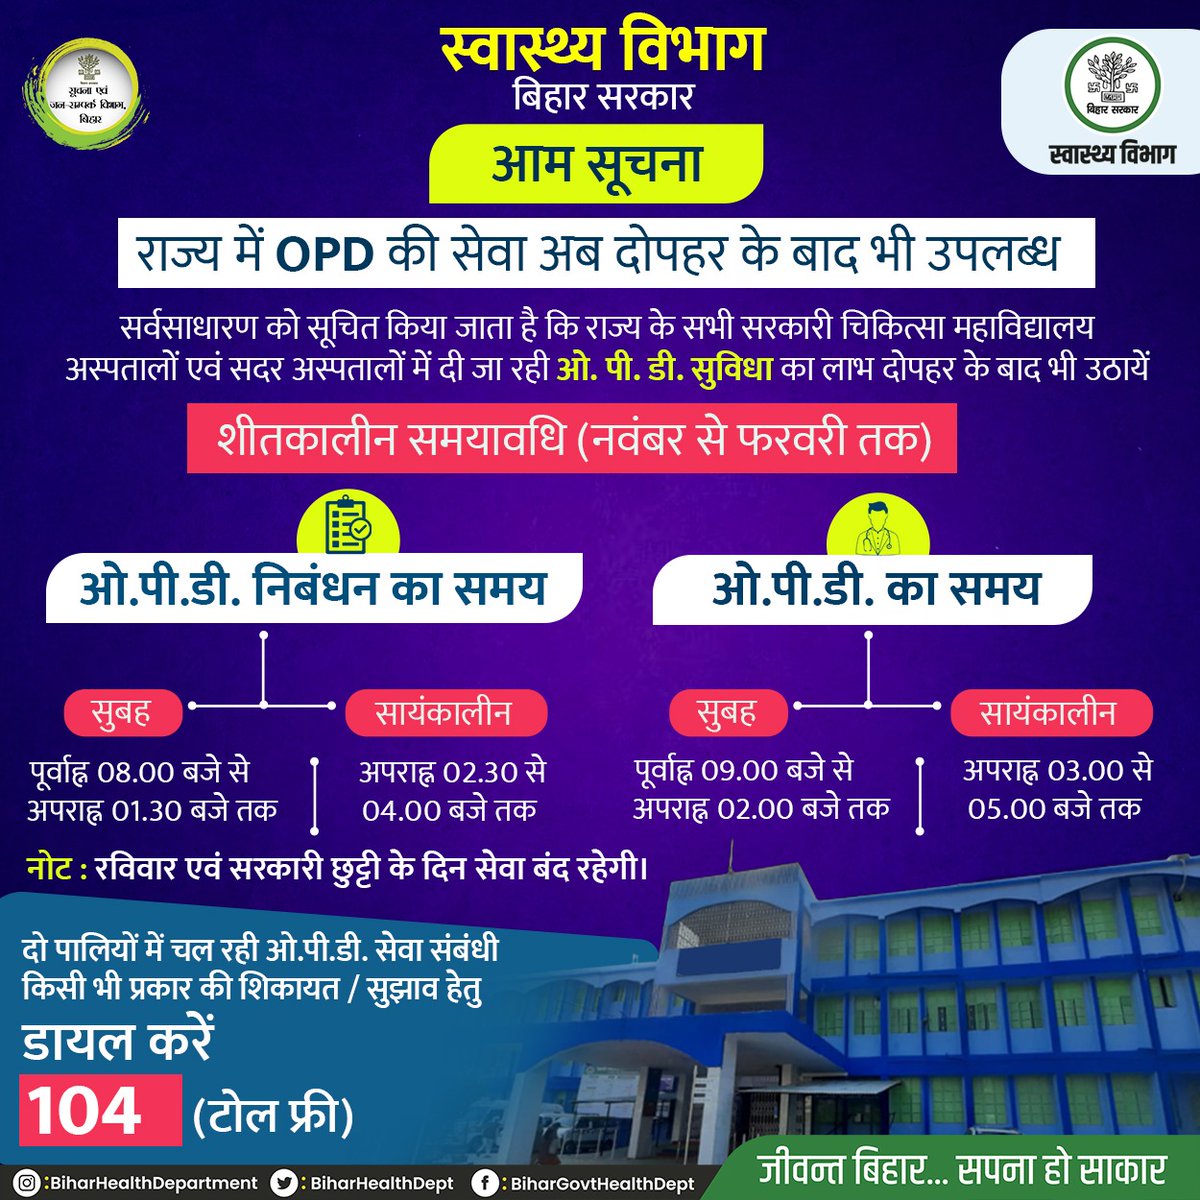 आम सूचना ! सर्वसाधारण को सूचित किया जाता है कि राज्य के सभी सरकारी चिकित्सा महाविद्यालय अस्पतालों एवं सदर अस्पतालों में मरीजों को दी जाने वाली ओ.पी.डी की सुविधा का समय निम्नलिखित हैं। @yadavtejashwi @IPRD_Bihar @SHSBihar #BiharHealthDept